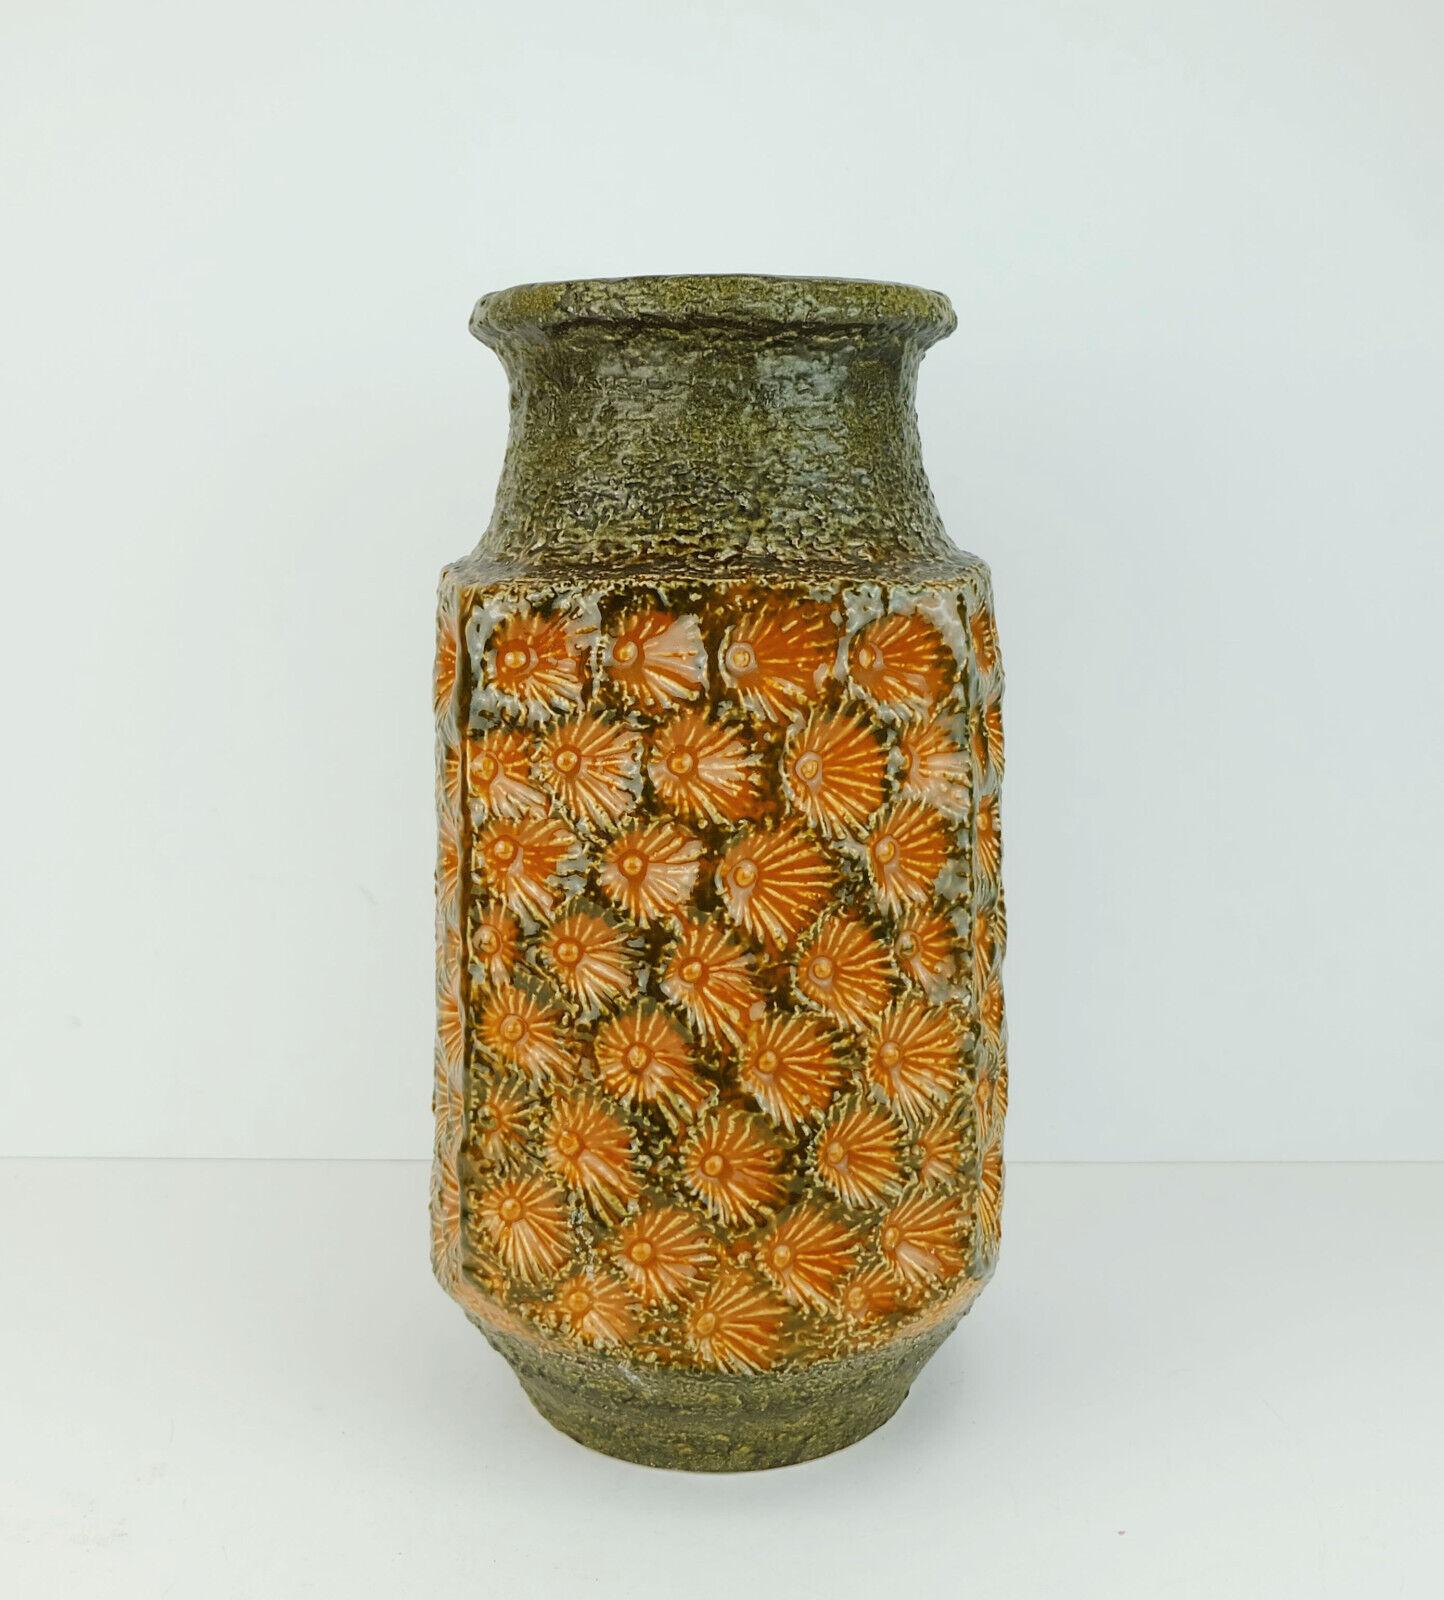 Très beau grand vase de sol du milieu du siècle fabriqué par Jasba-Keramik en Allemagne de l'Ouest dans les années 1960. Décoration en relief de fleurs stylisées en orange, vert olive et beige clair sur les quatre faces. Au-dessus et en dessous de